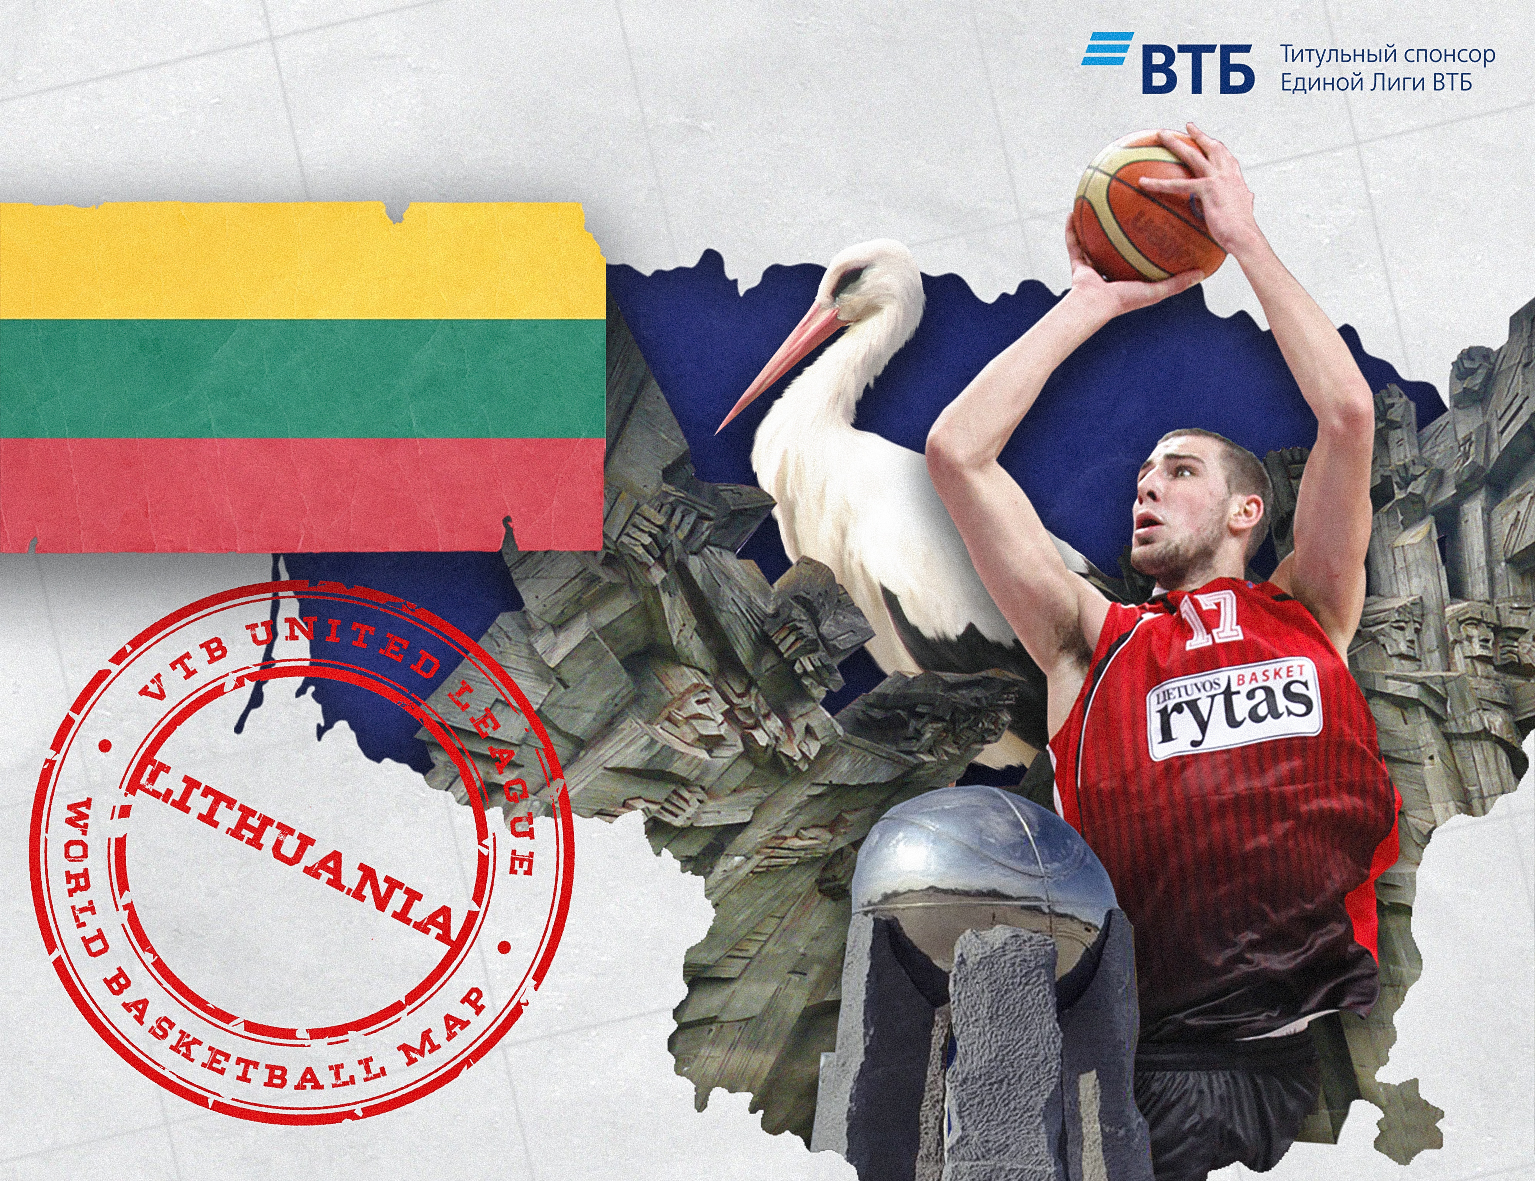 World basketball map: Lithuania